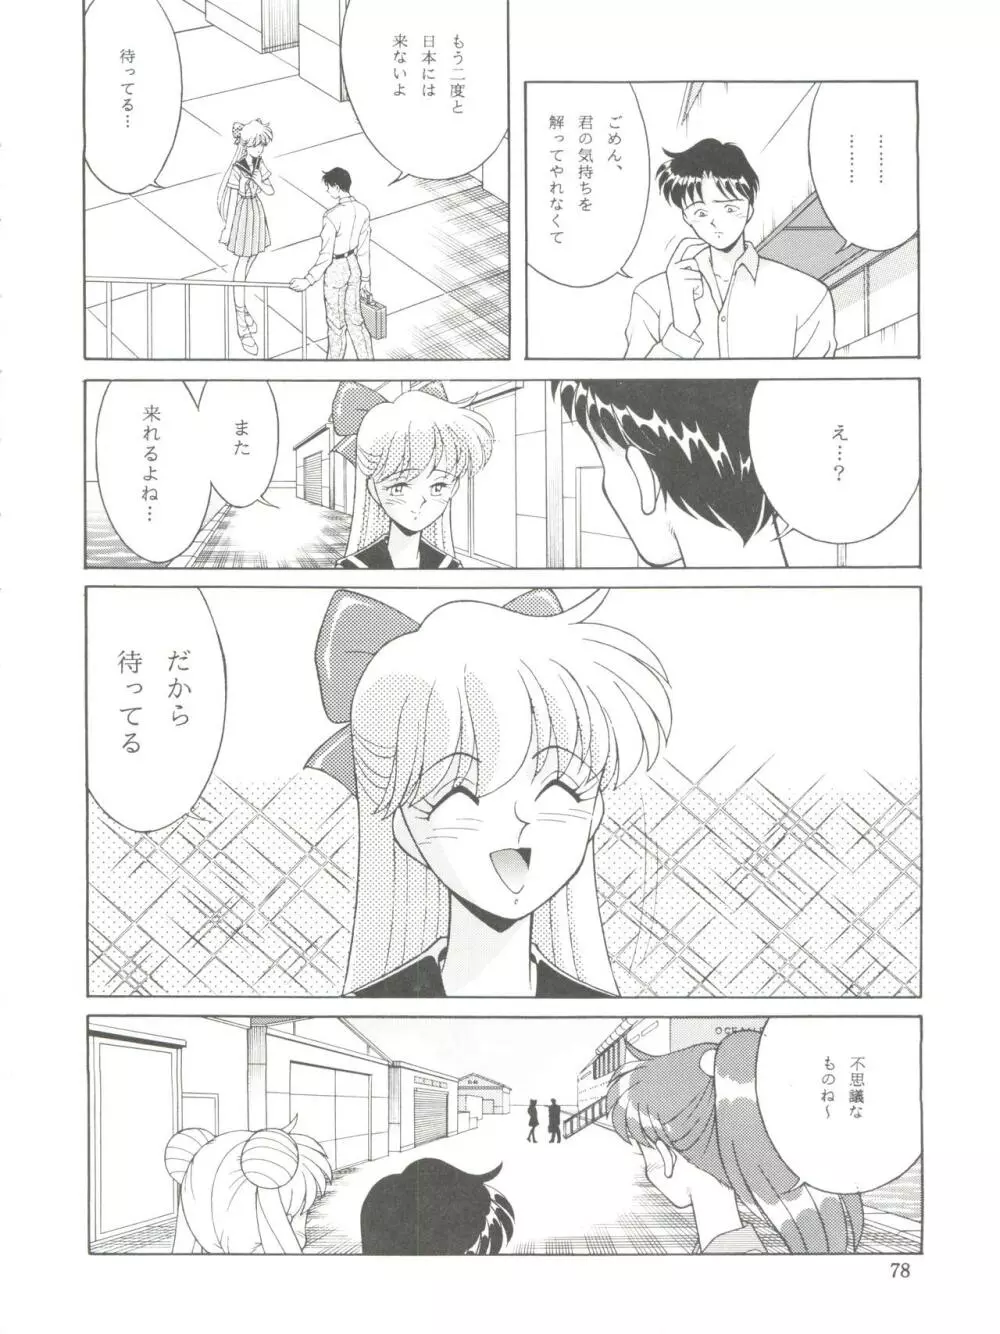 NANIWA-YA FINAL DRESS UP! - page78